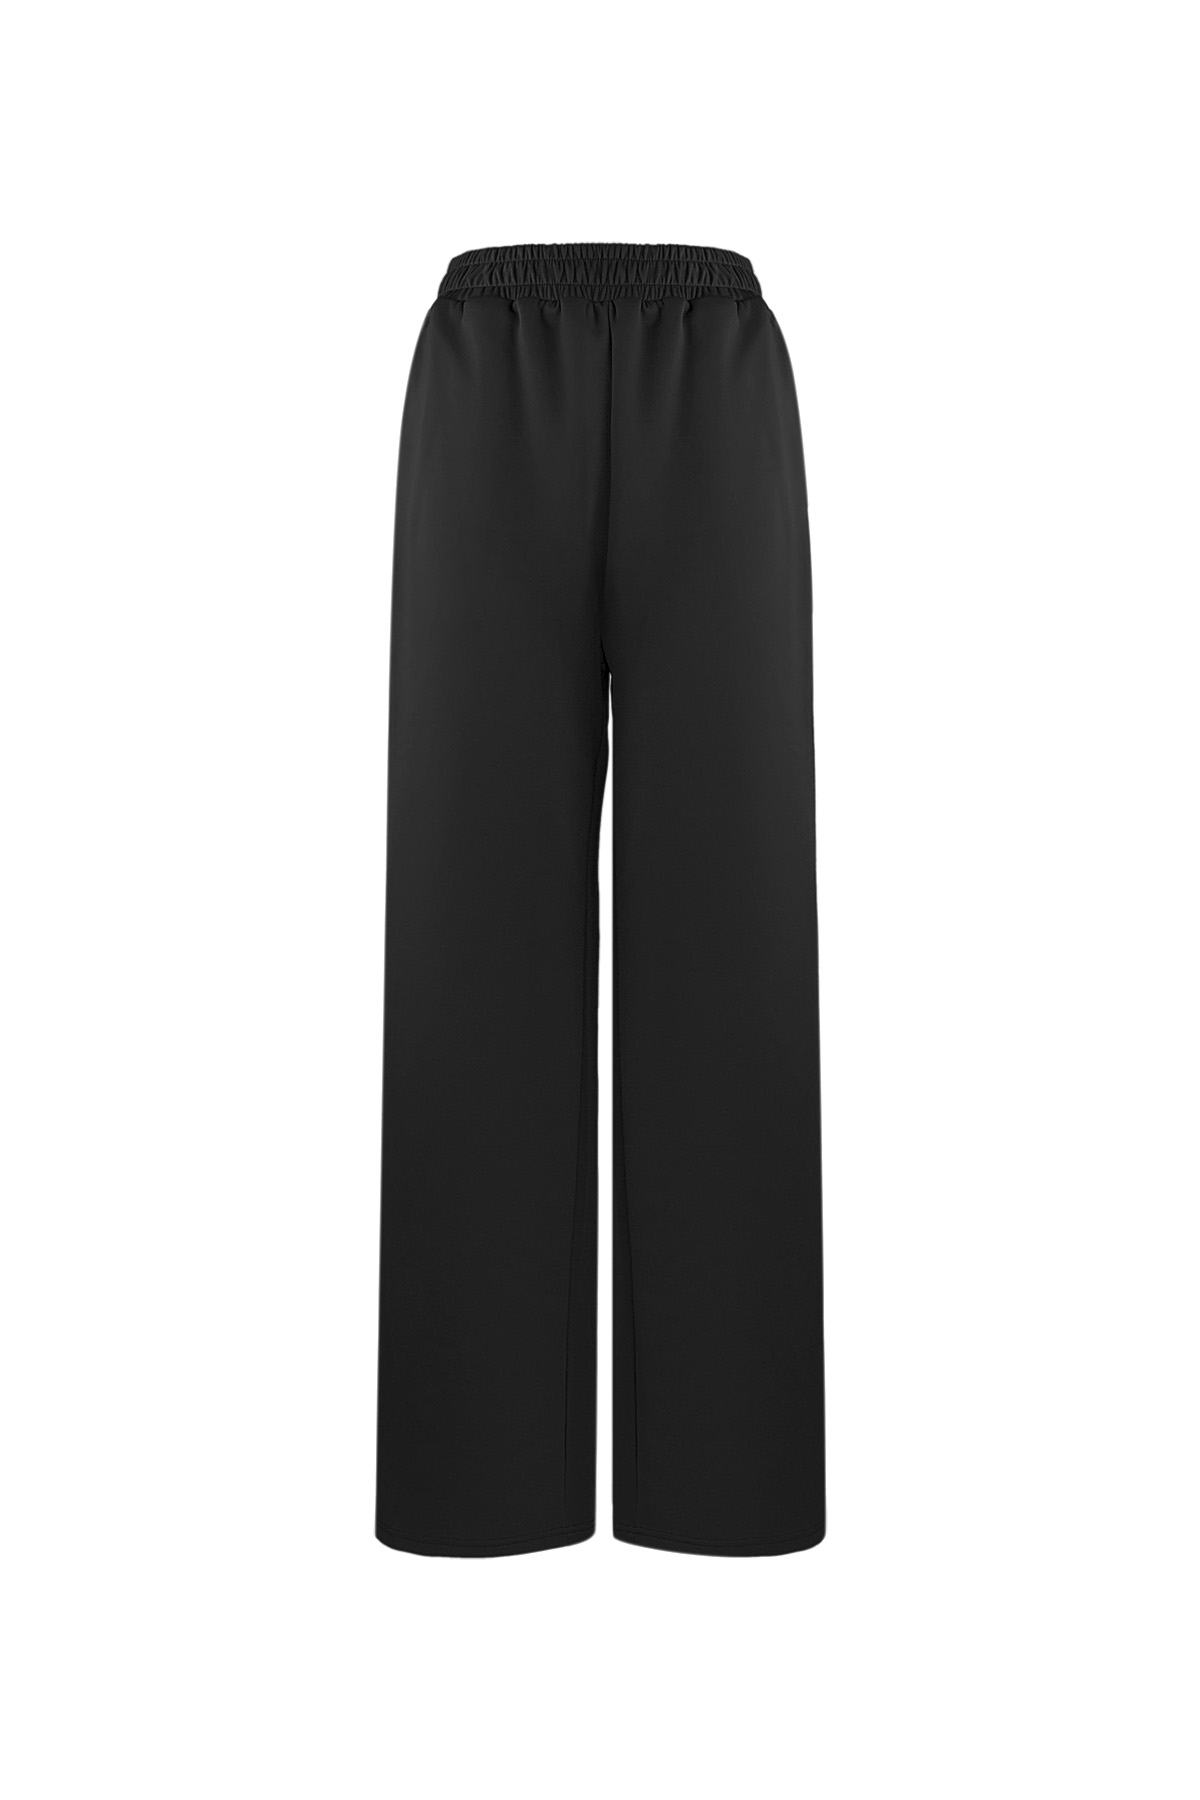 Pantalon indispensable à rayures - noir S